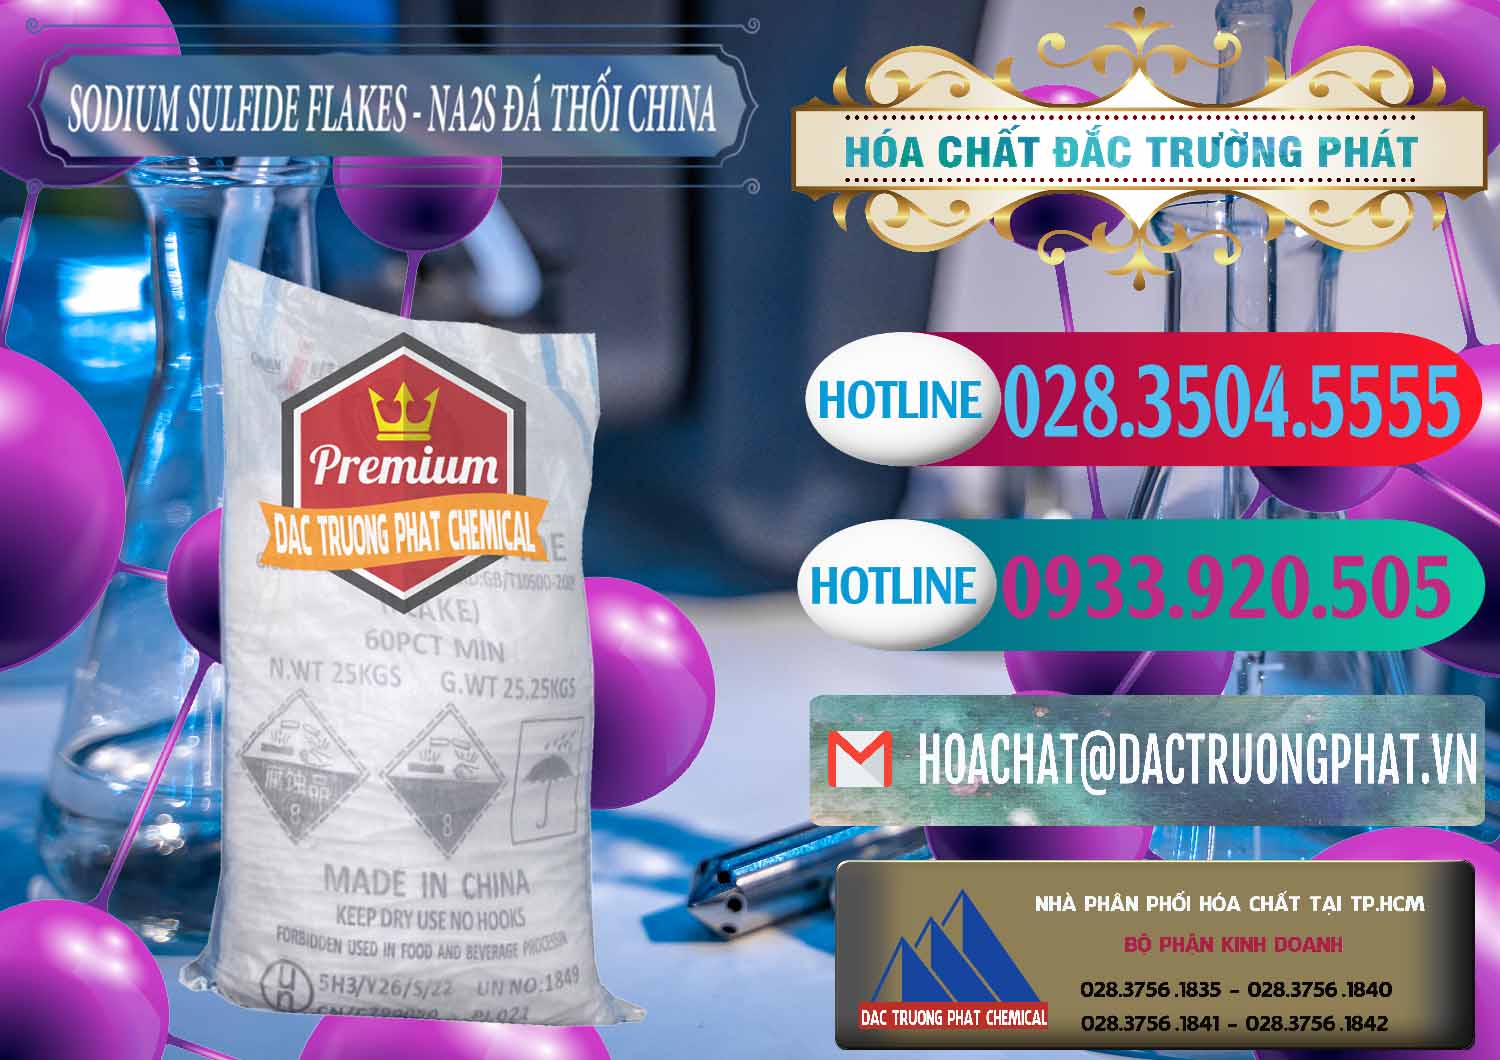 Nơi cung ứng & bán Sodium Sulfide NA2S – Đá Thối Liyuan Trung Quốc China - 0385 - Cty phân phối và cung cấp hóa chất tại TP.HCM - truongphat.vn